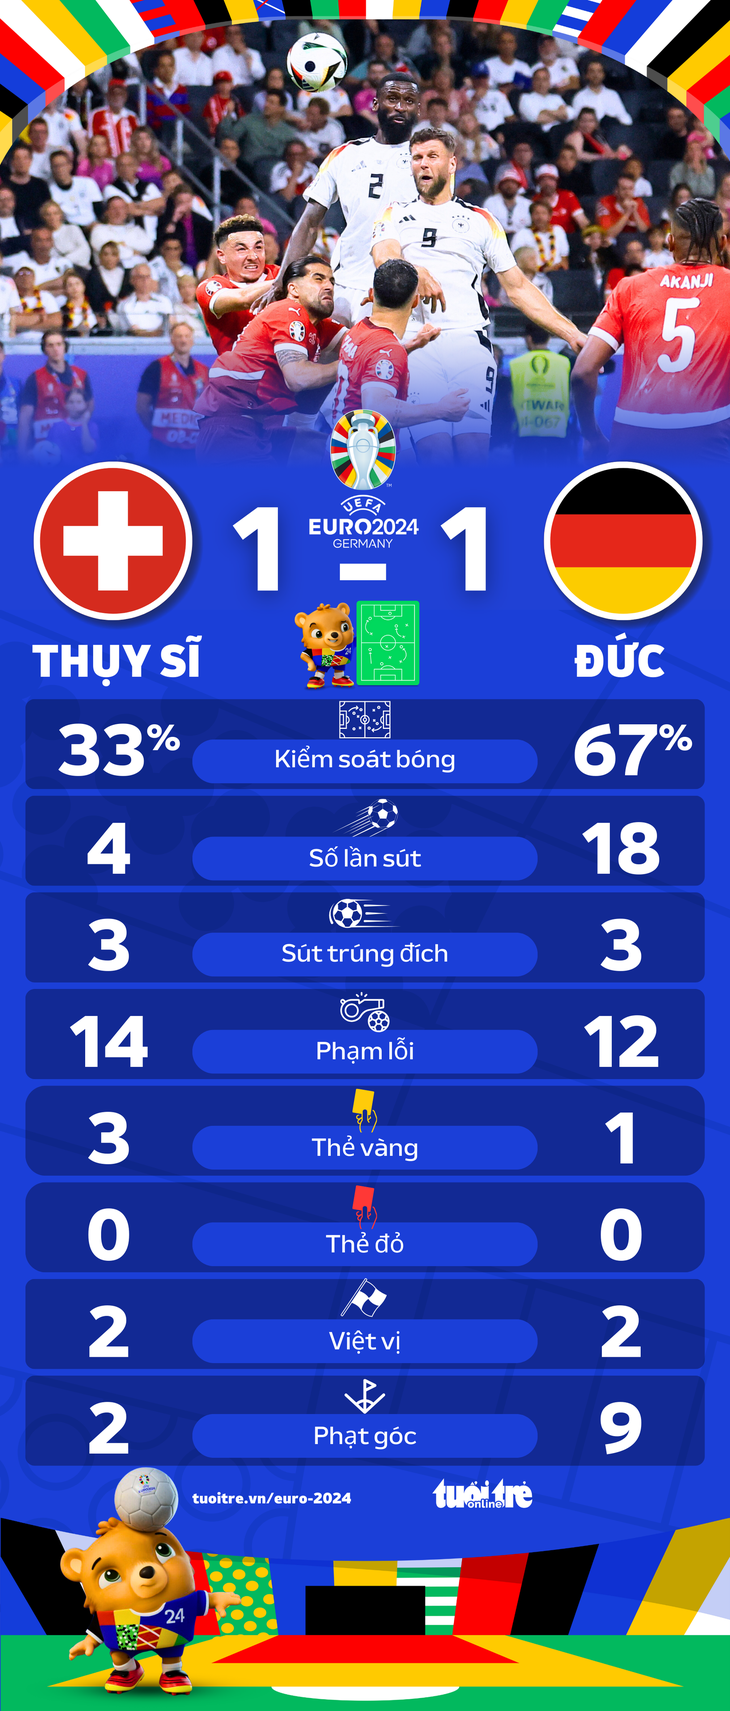 Thông số thống kê trận đấu giữa tuyển Thụy Sĩ và tuyển Đức - Đồ họa: AN BÌNH